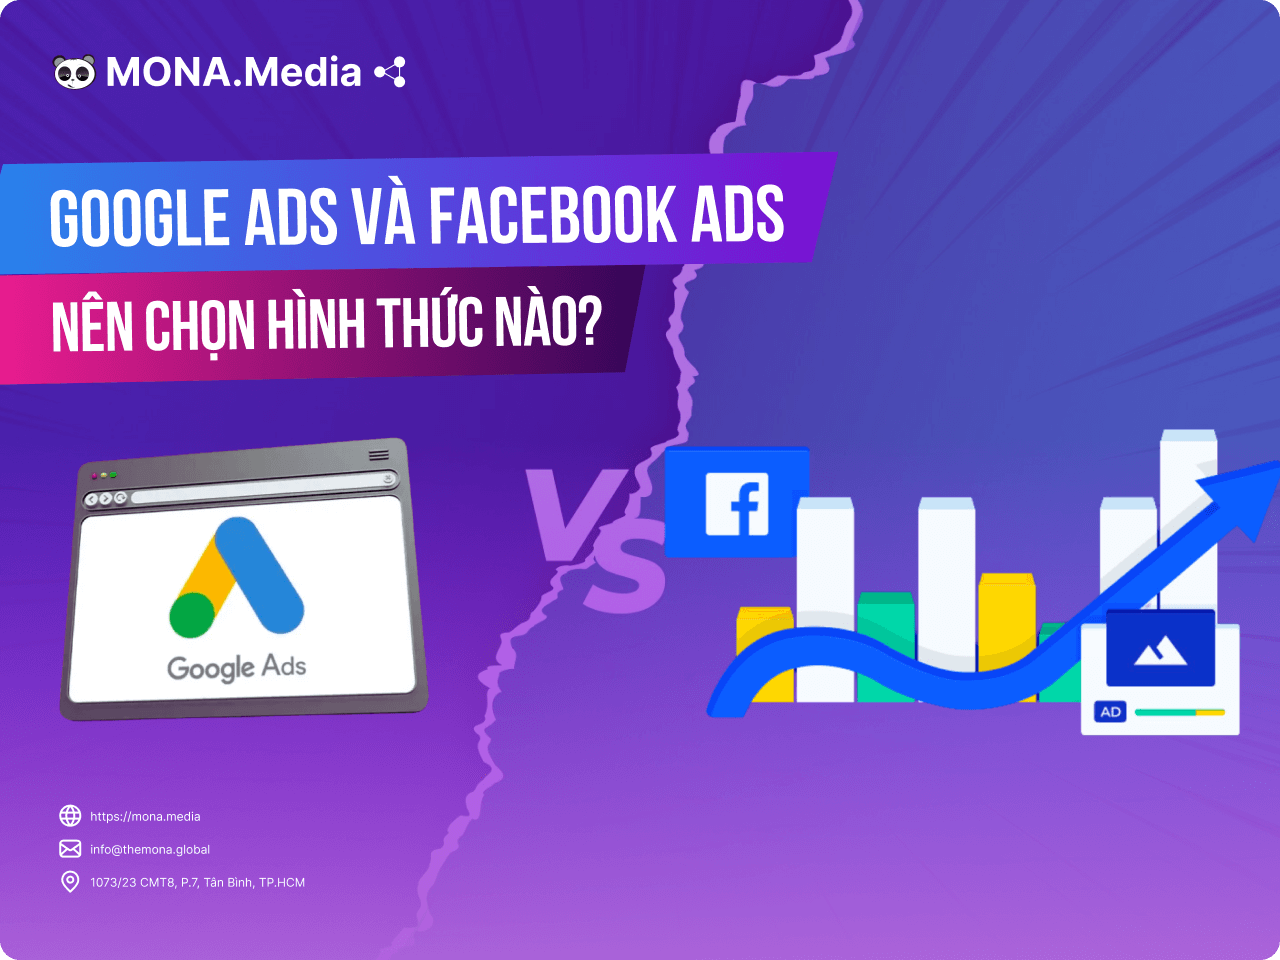 Google Ads và Facebook Ads: Nên chọn hình thức nào?